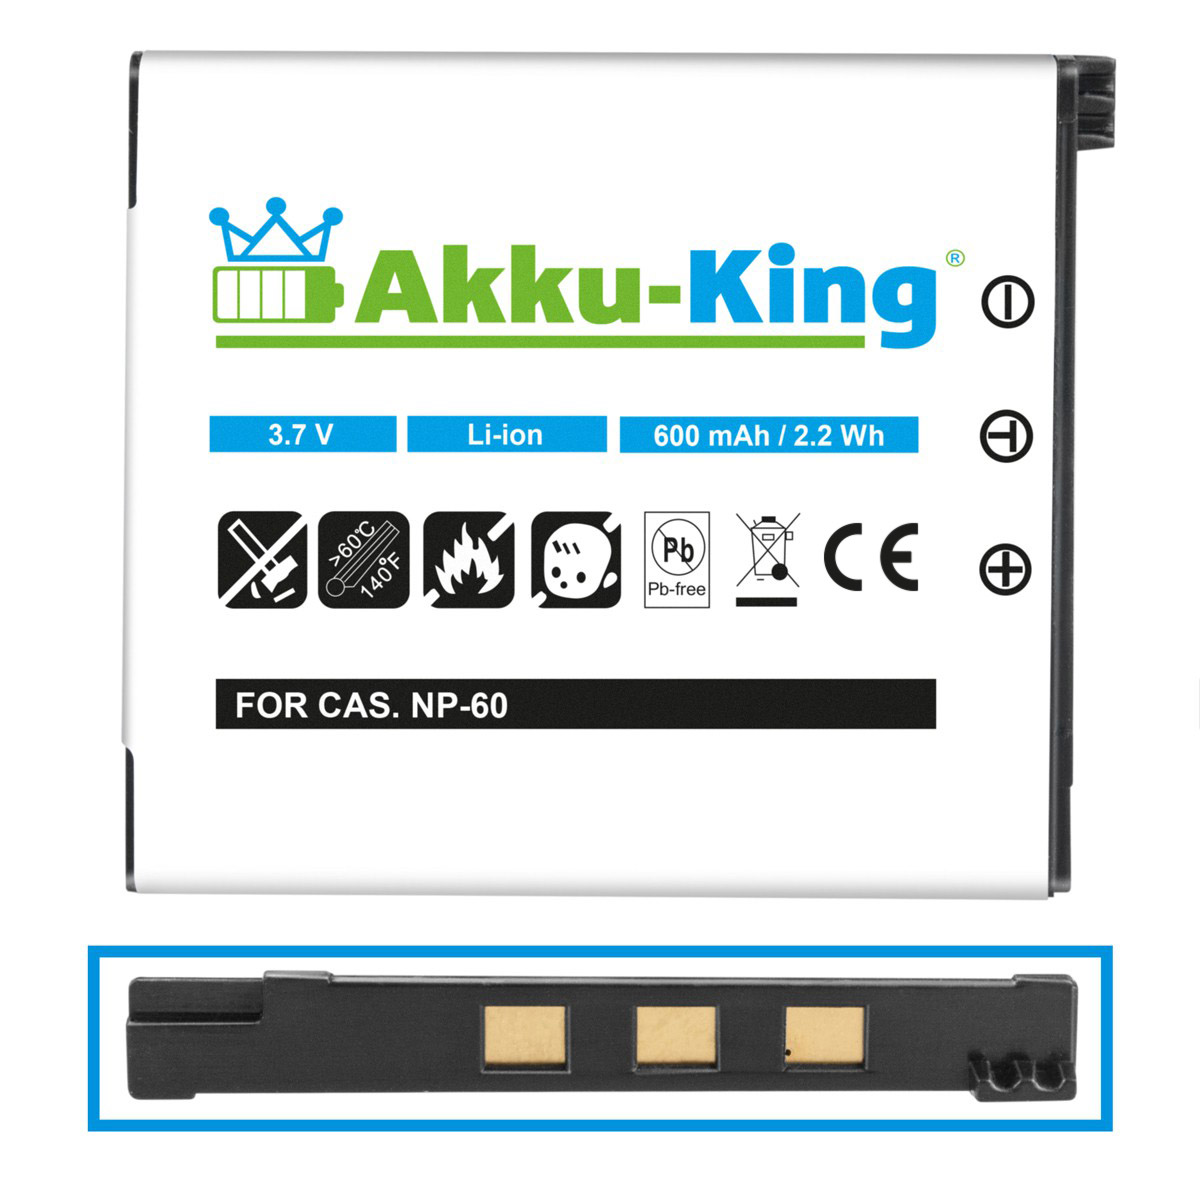 AKKU-KING Casio 600mAh Volt, Kamera-Akku, mit NP-60 Akku 3.7 kompatibel Li-Ion